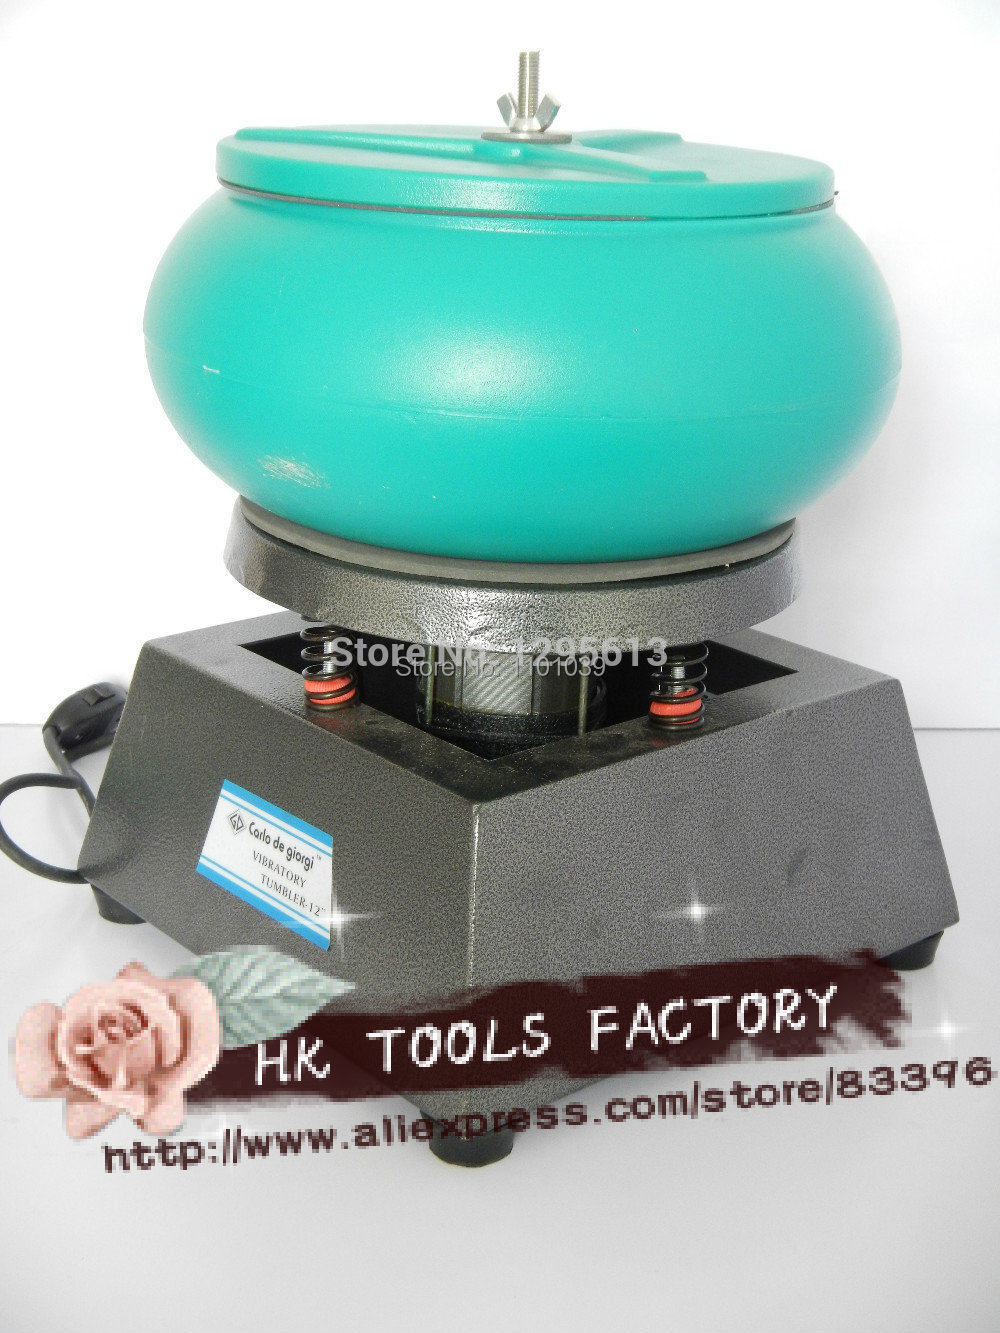 2014 jewelry tumbler Medium Vibratory Tumbler Wet Dry Polisher, Finisher & Cleaner. Polishing Machine tumbler polisher